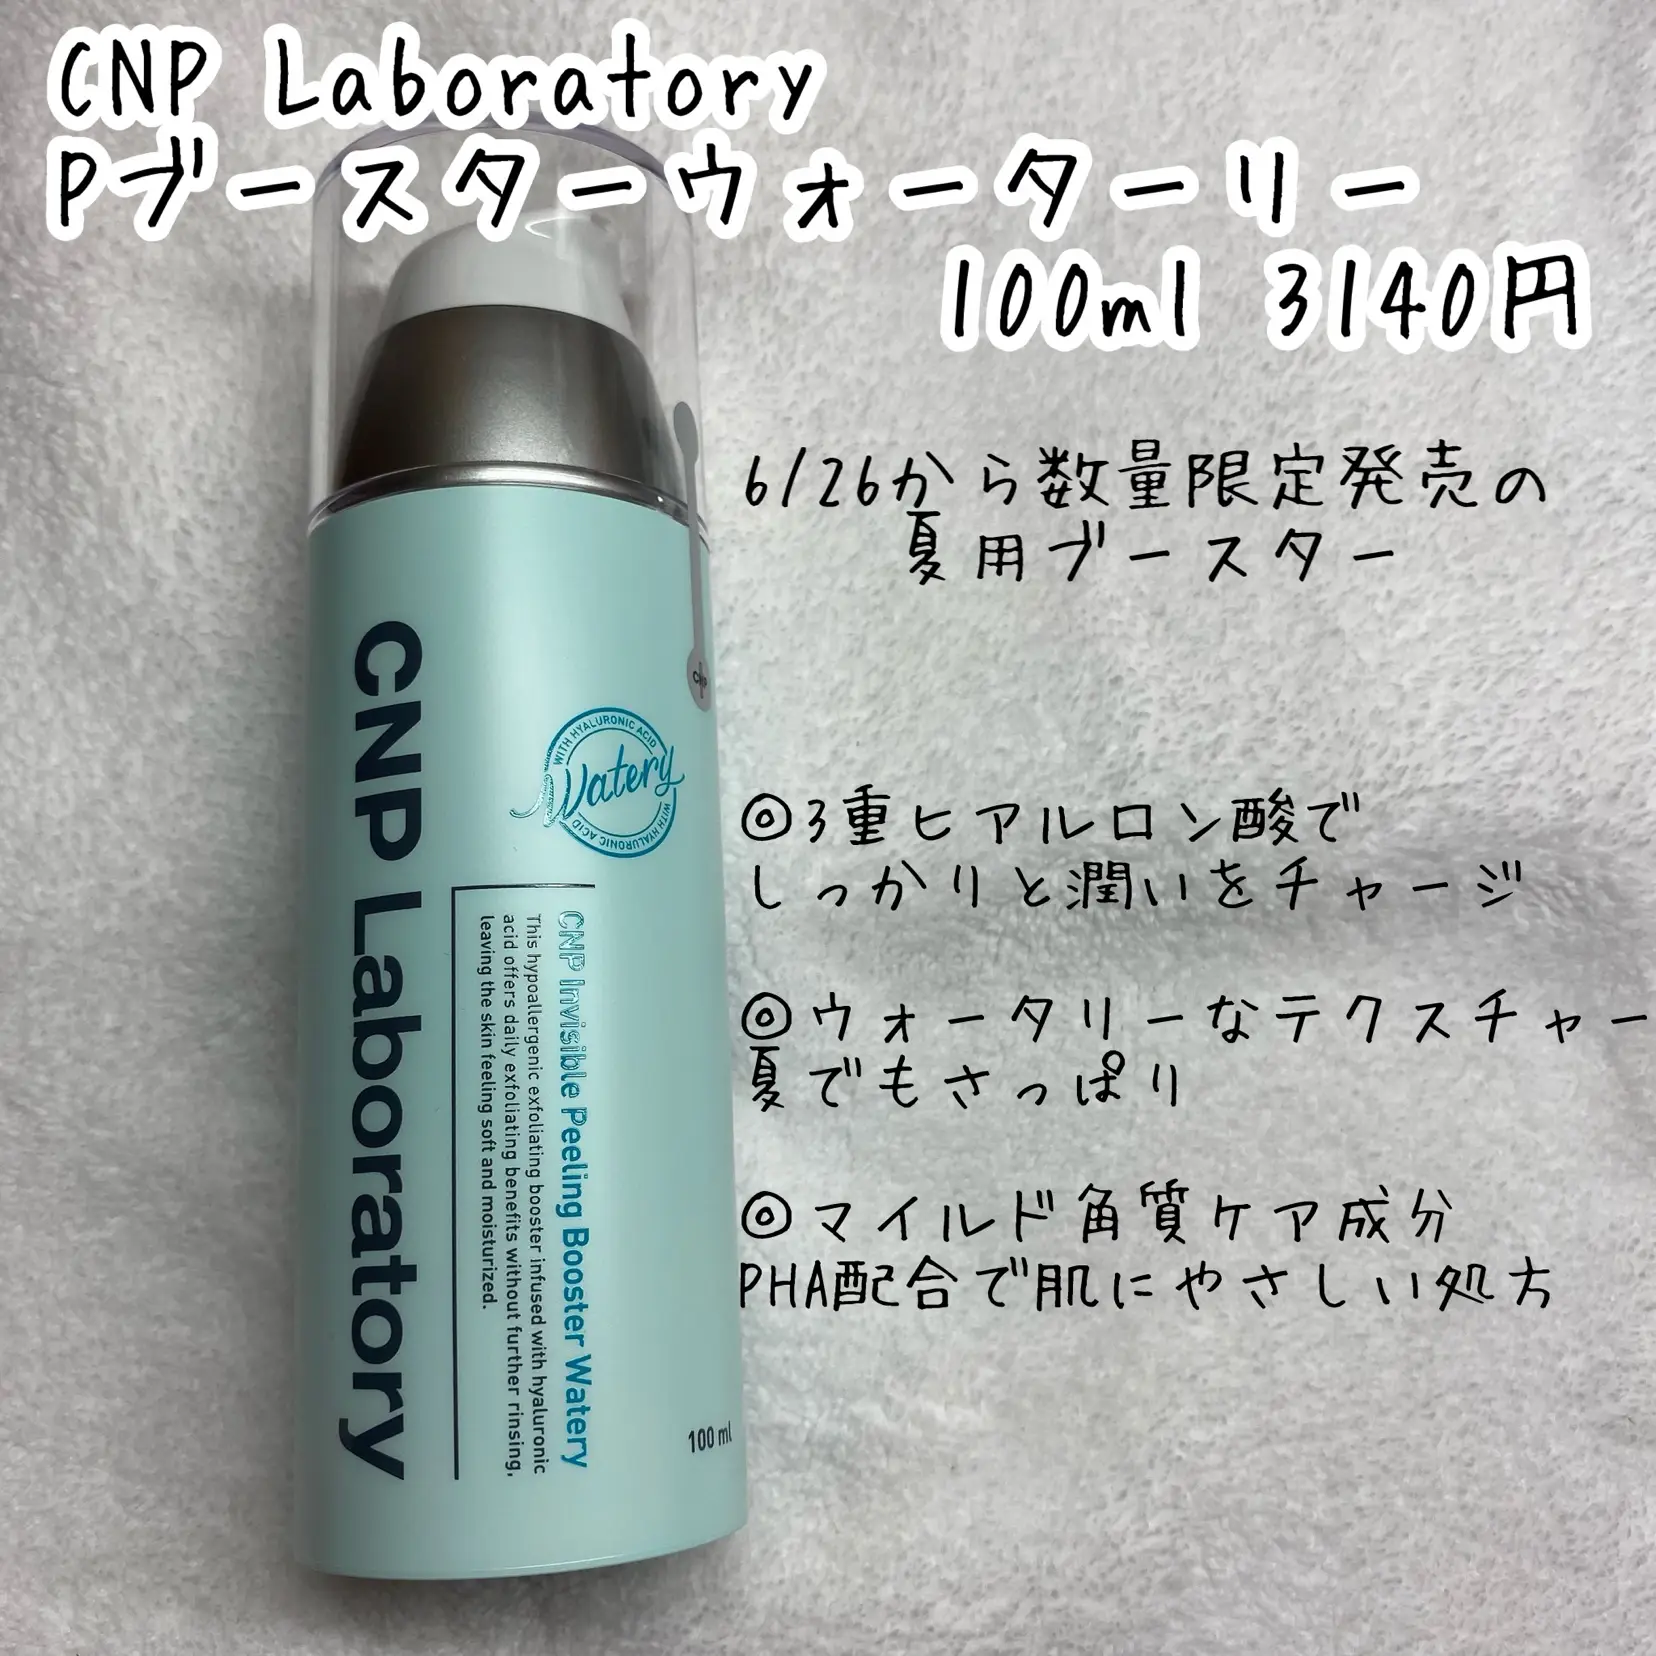 Pブースター ウォーターリー CNP Laboratory(シーエヌピーラボラトリー)(ブースター・導入液, スキンケア・基礎化粧品)の通販  @cosme公式通販【@cosme SHOPPING】 CNP Pブースター